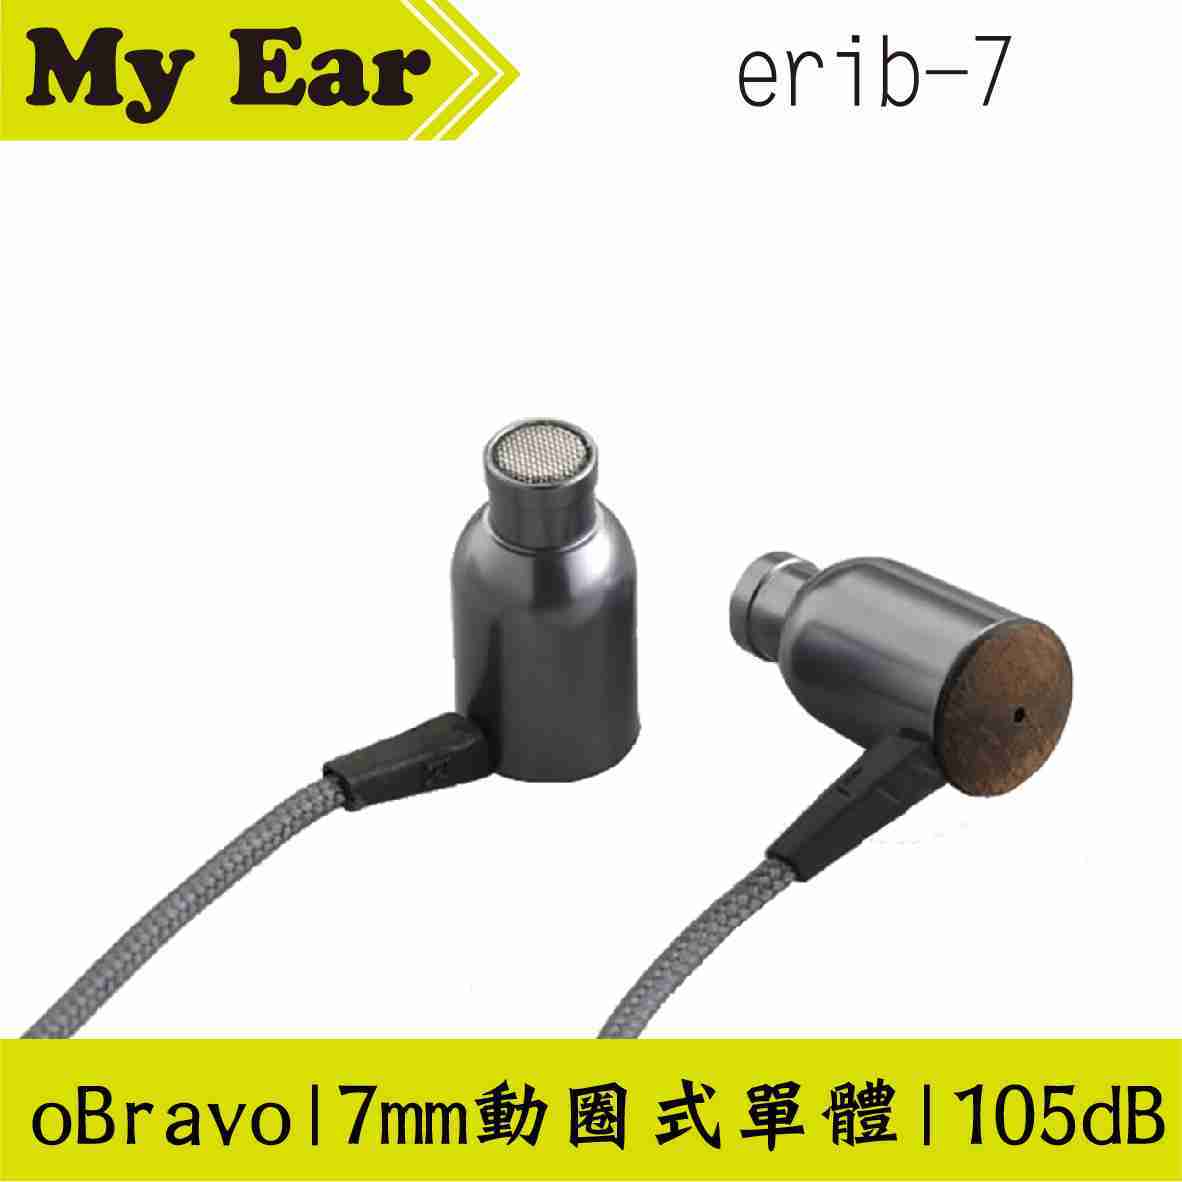 oBravo erib-7 耳道式耳機 平面振膜式 | My Ear耳機專門店